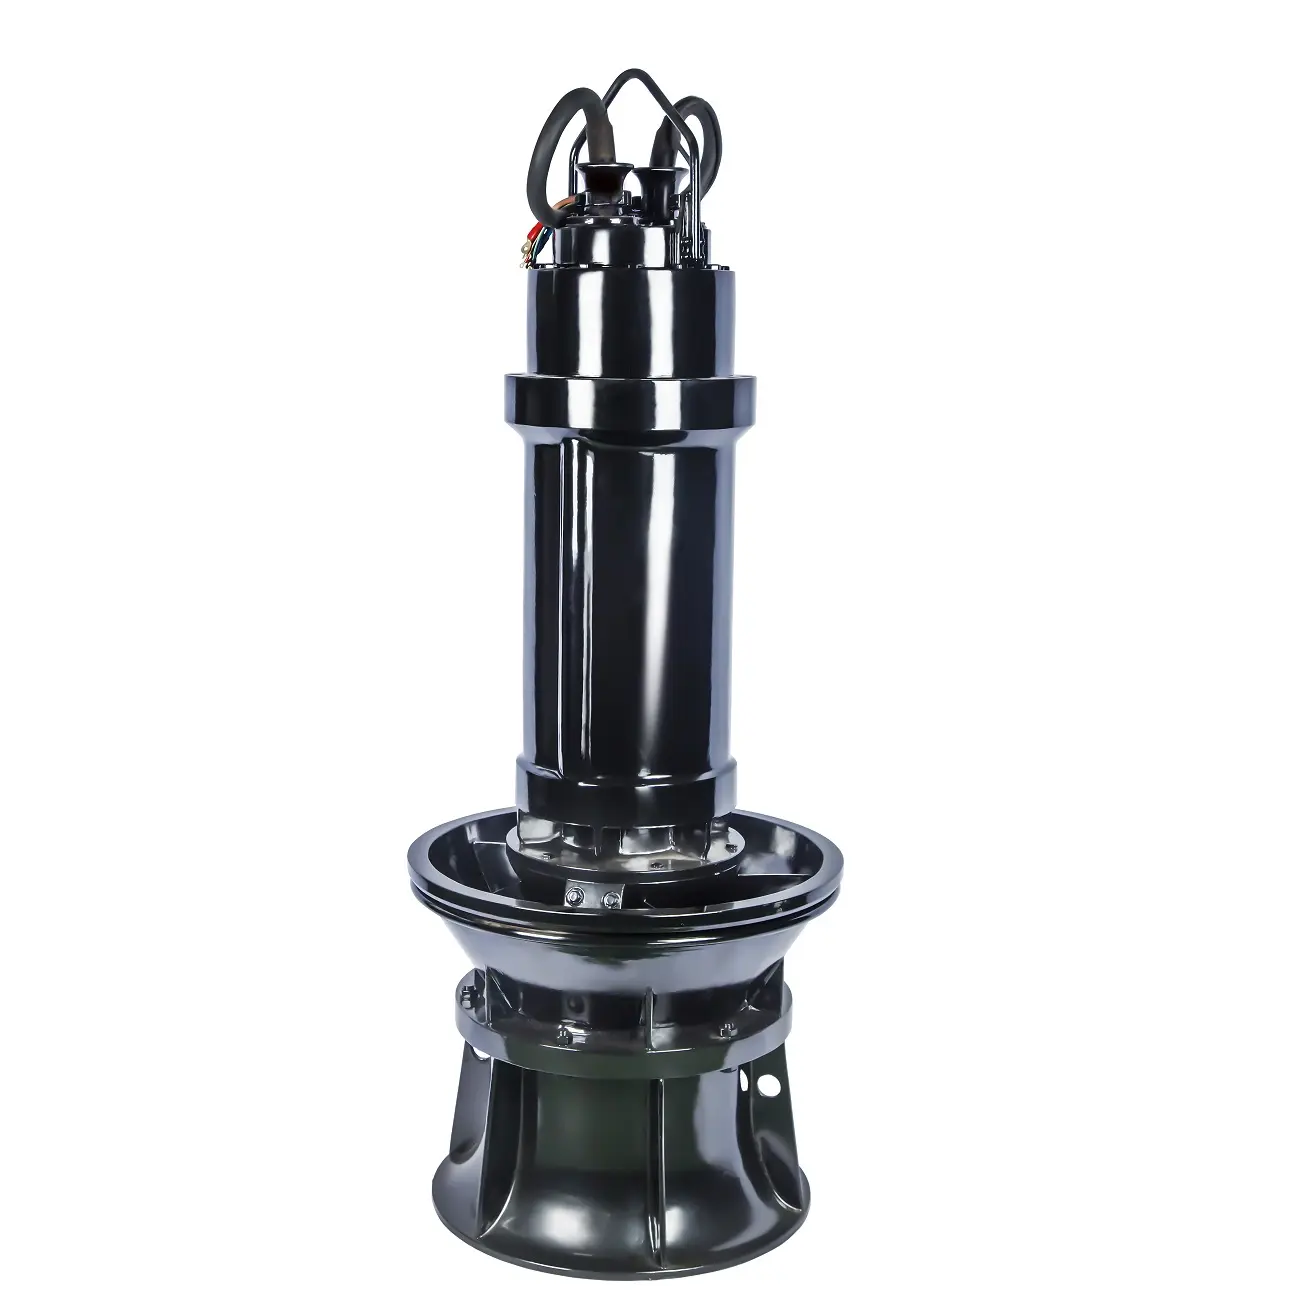 Bomba elétrica submersível saf, bomba de fluxo axial para distribuição de água com grande capacidade resistente design simples